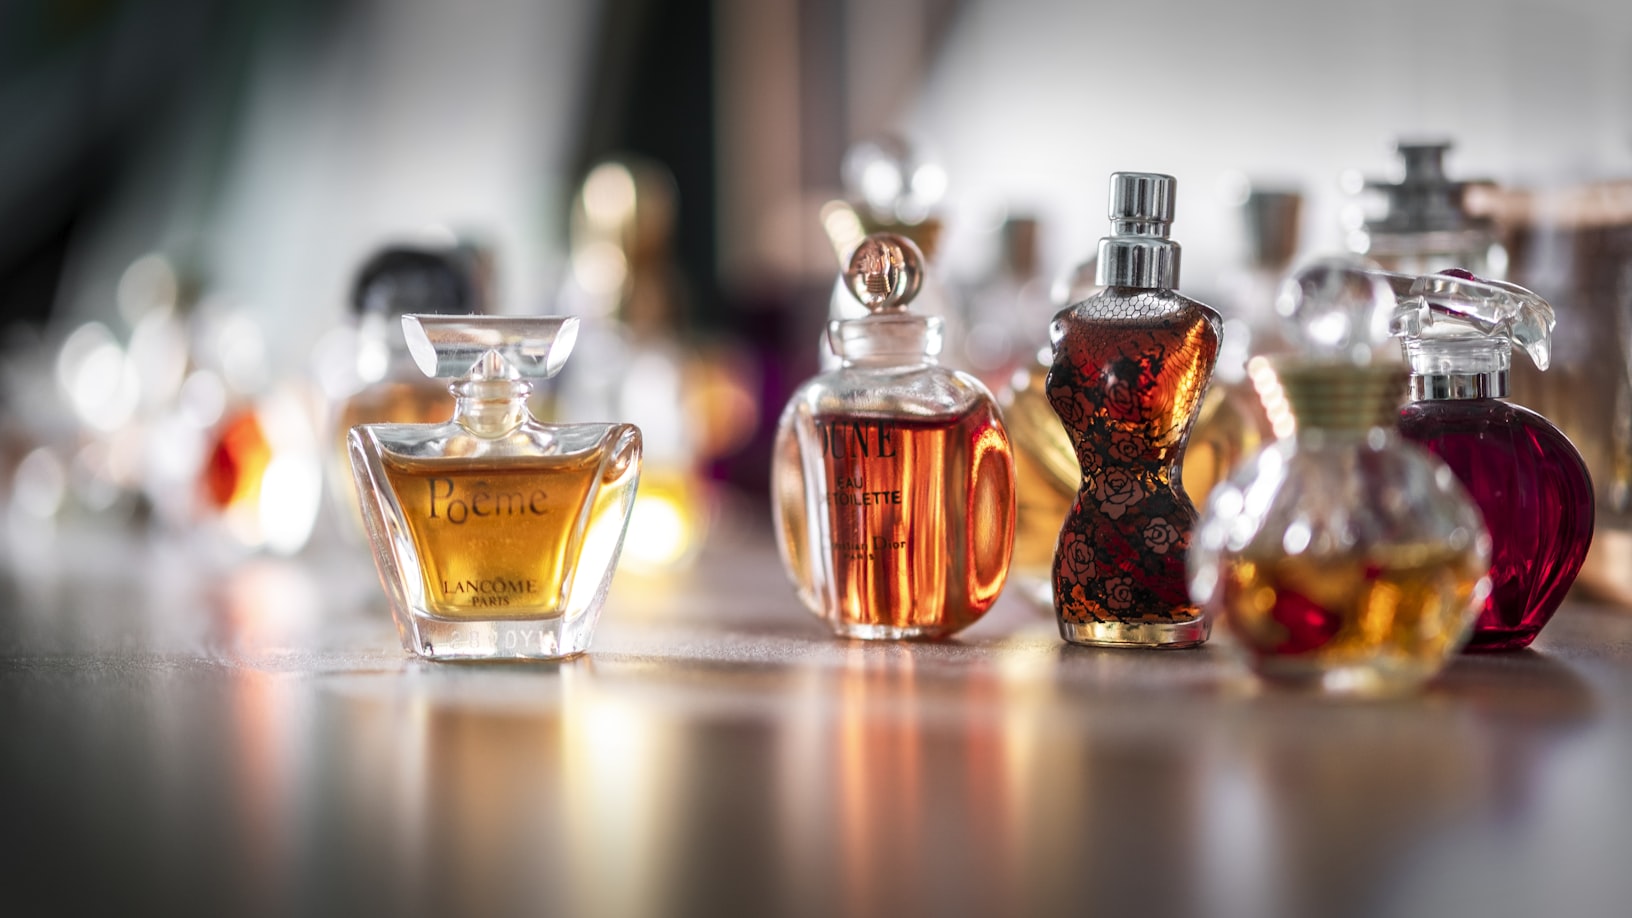 Quelle est la différence entre parfum et eau de parfum ? - Rakuten